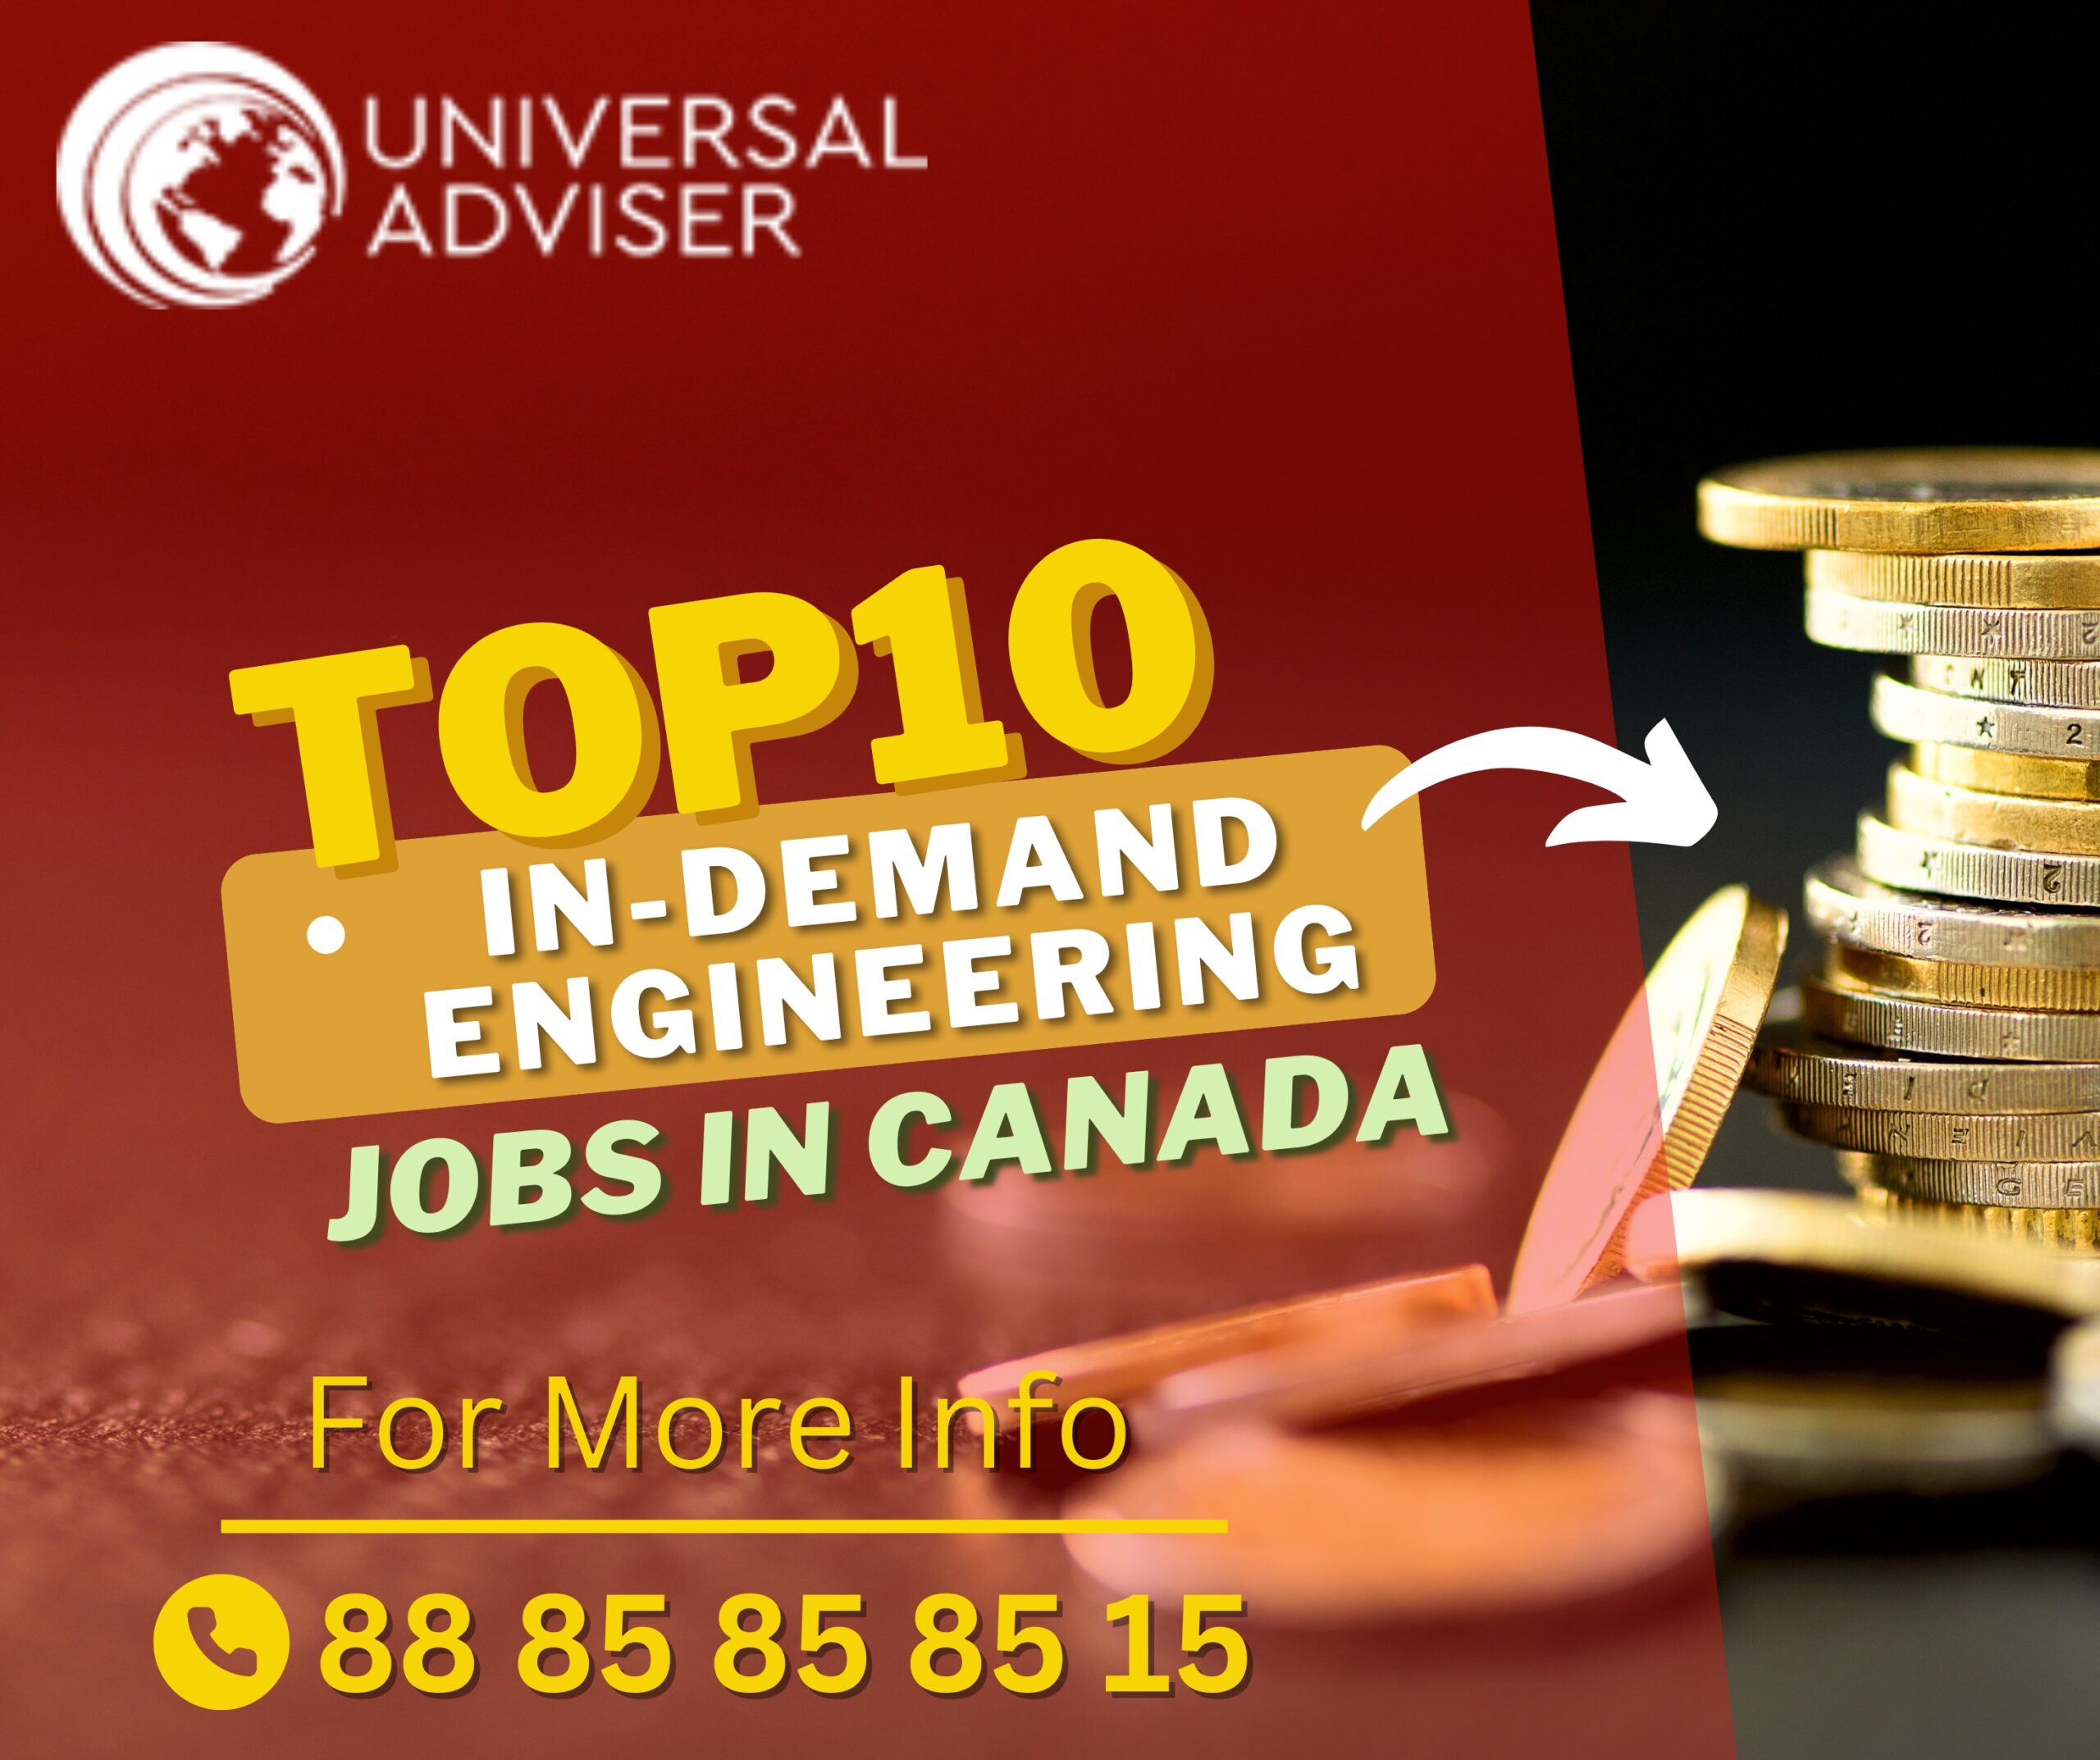 Top 10 In-Demand Engineering Jobs in Canada